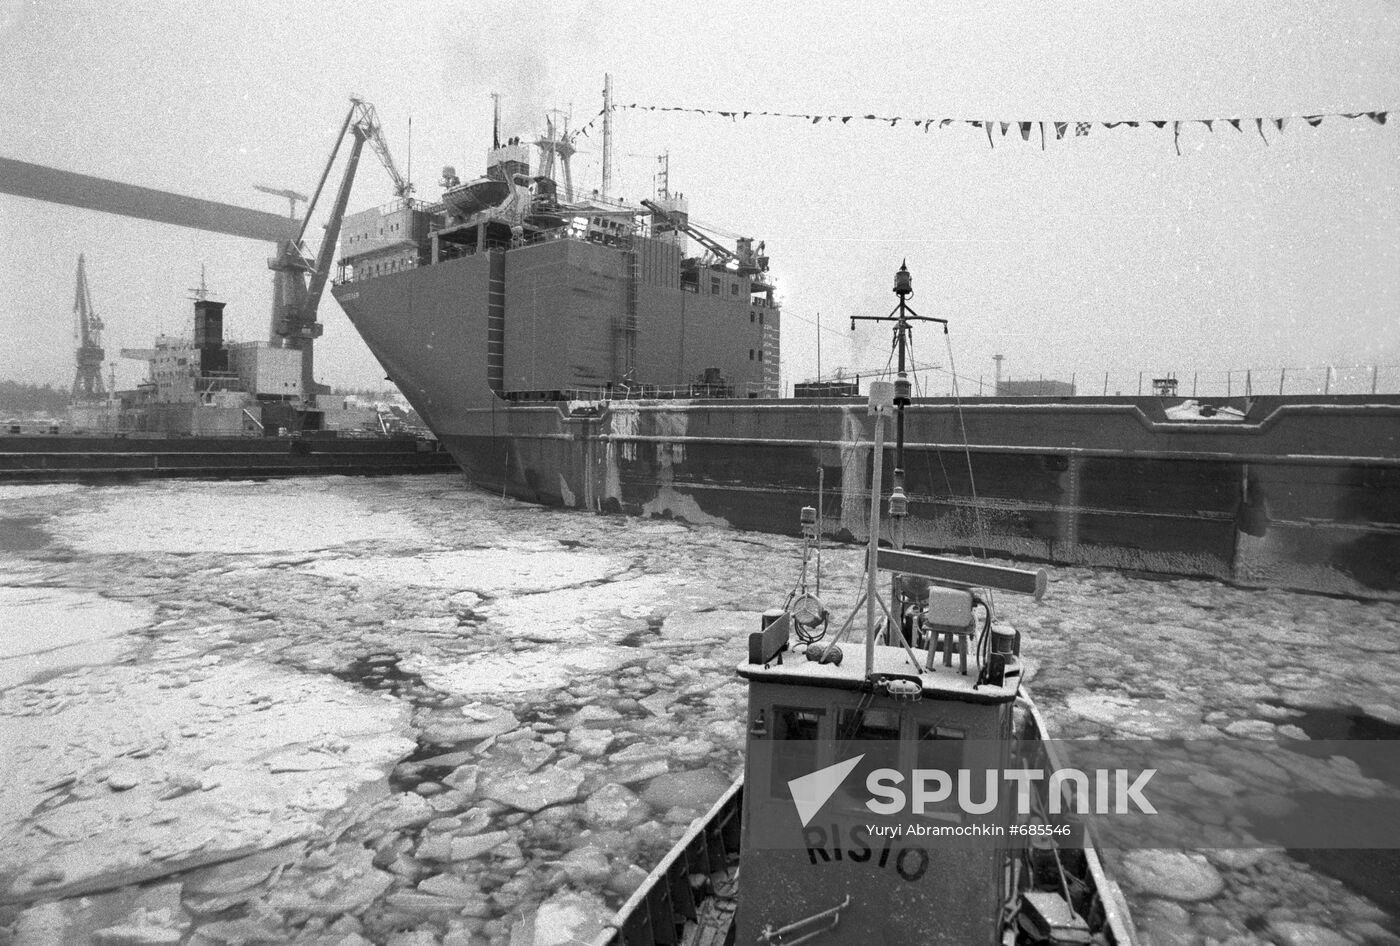 Shipyard in Turku